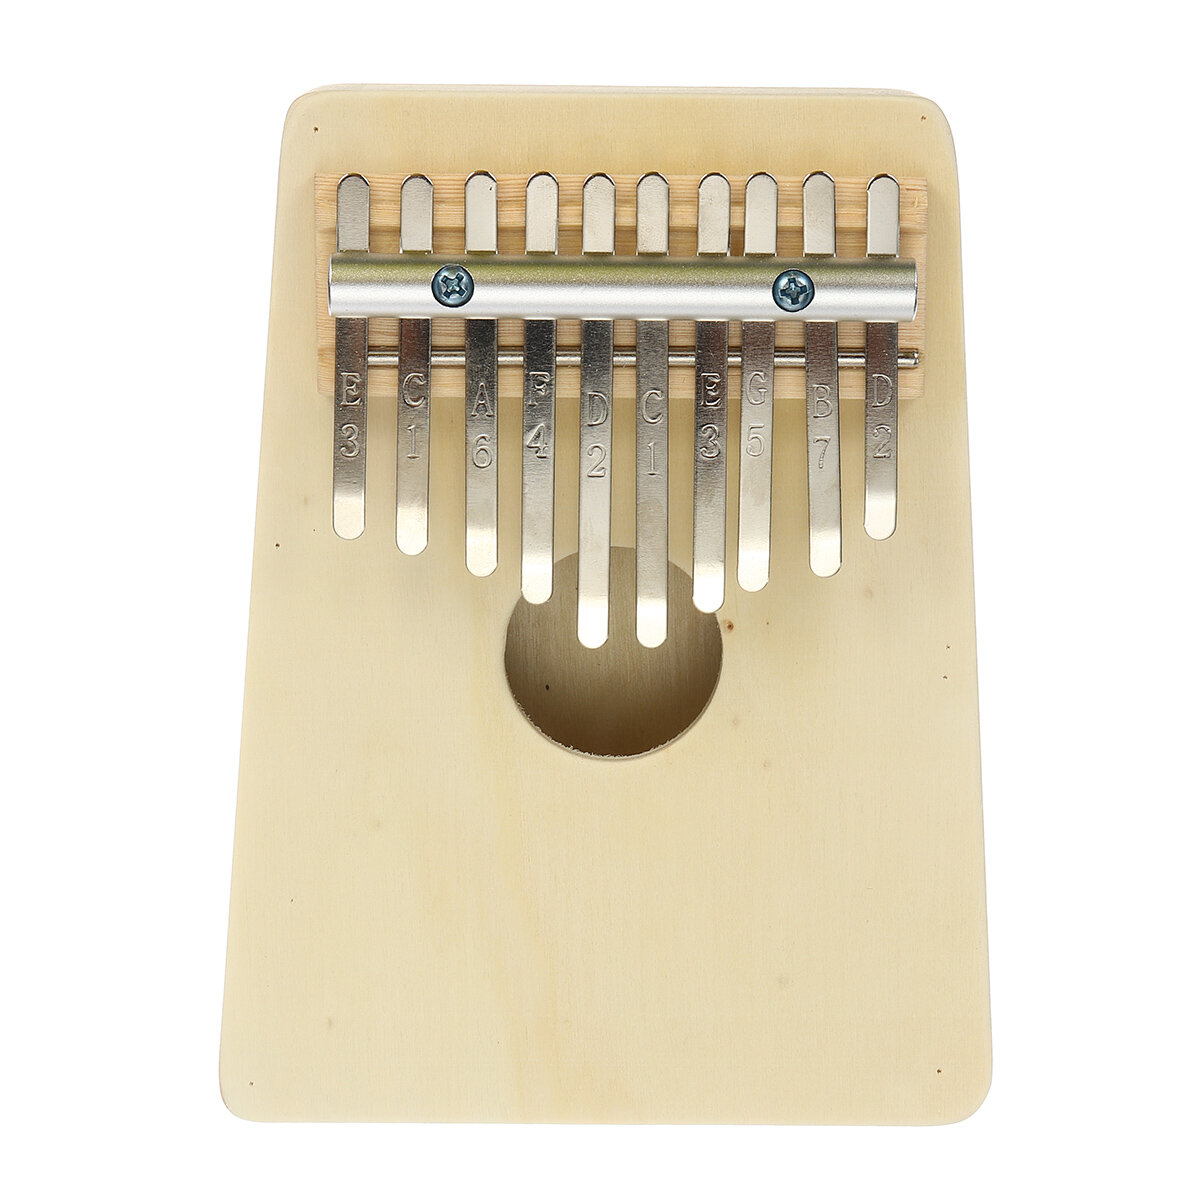 10 Key Kalimbas Thumb Piano Finger Mbira Wood Keyboard Muziekinstrument W / Tremolo